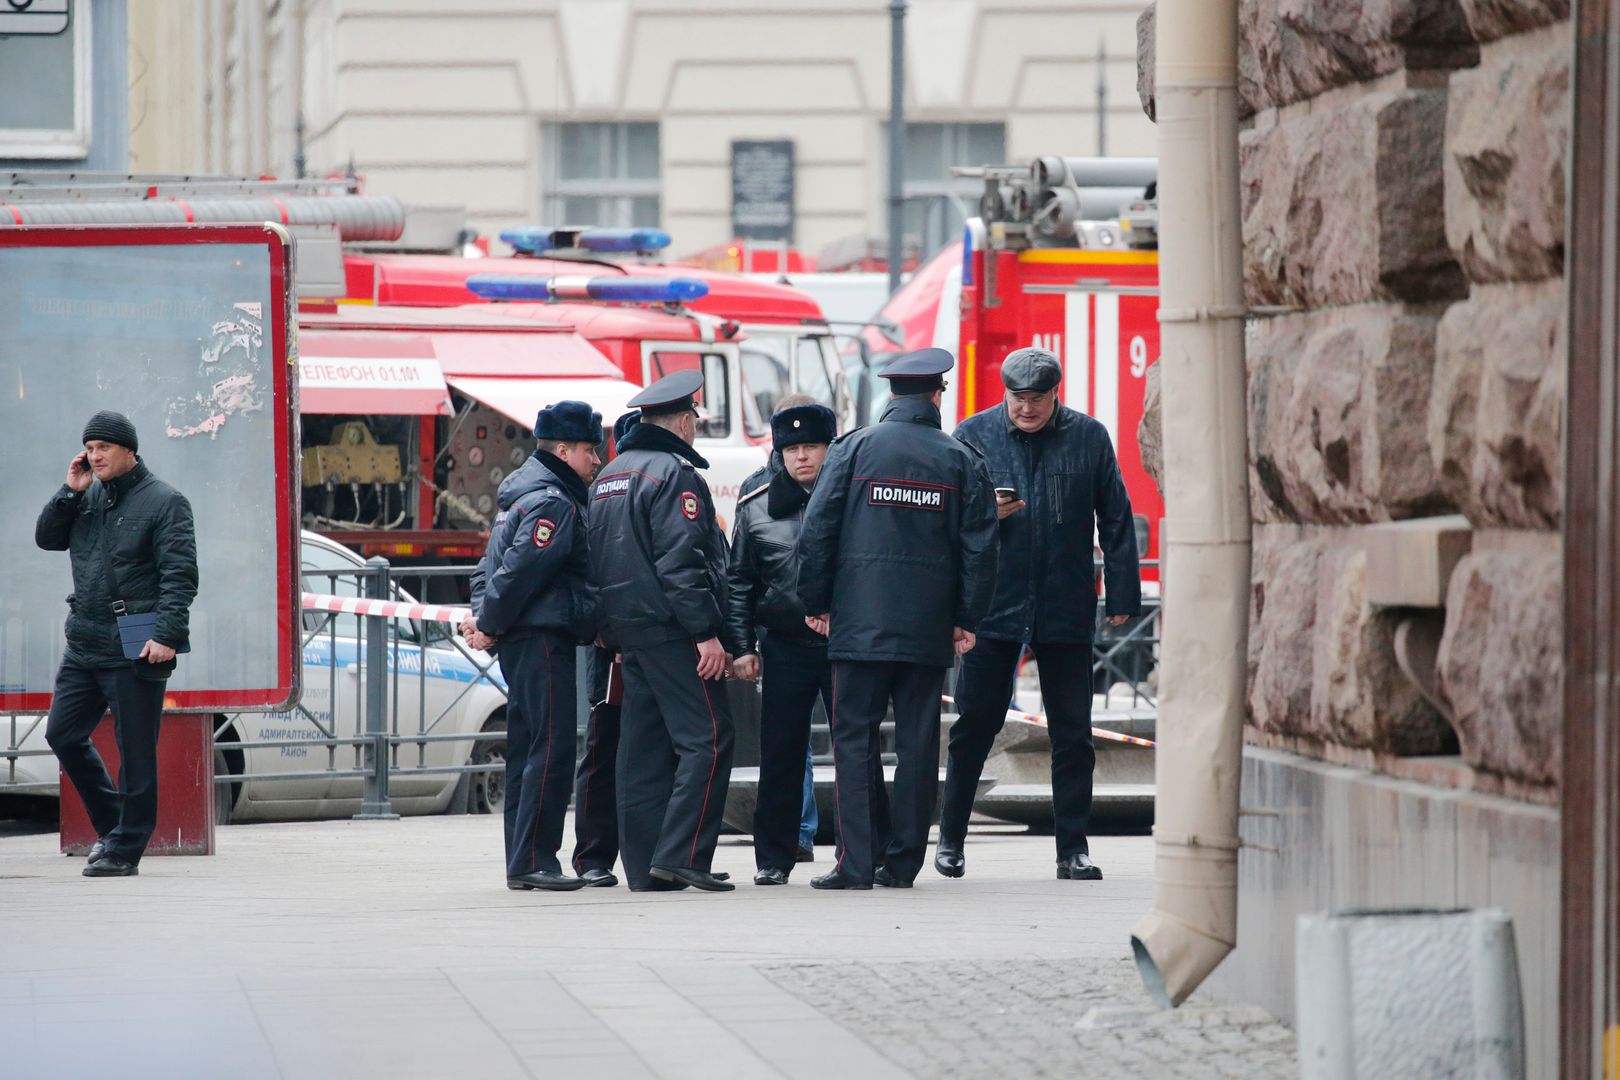 Kolejna bomba w Sankt Petersburgu. Policja spisała się na medal